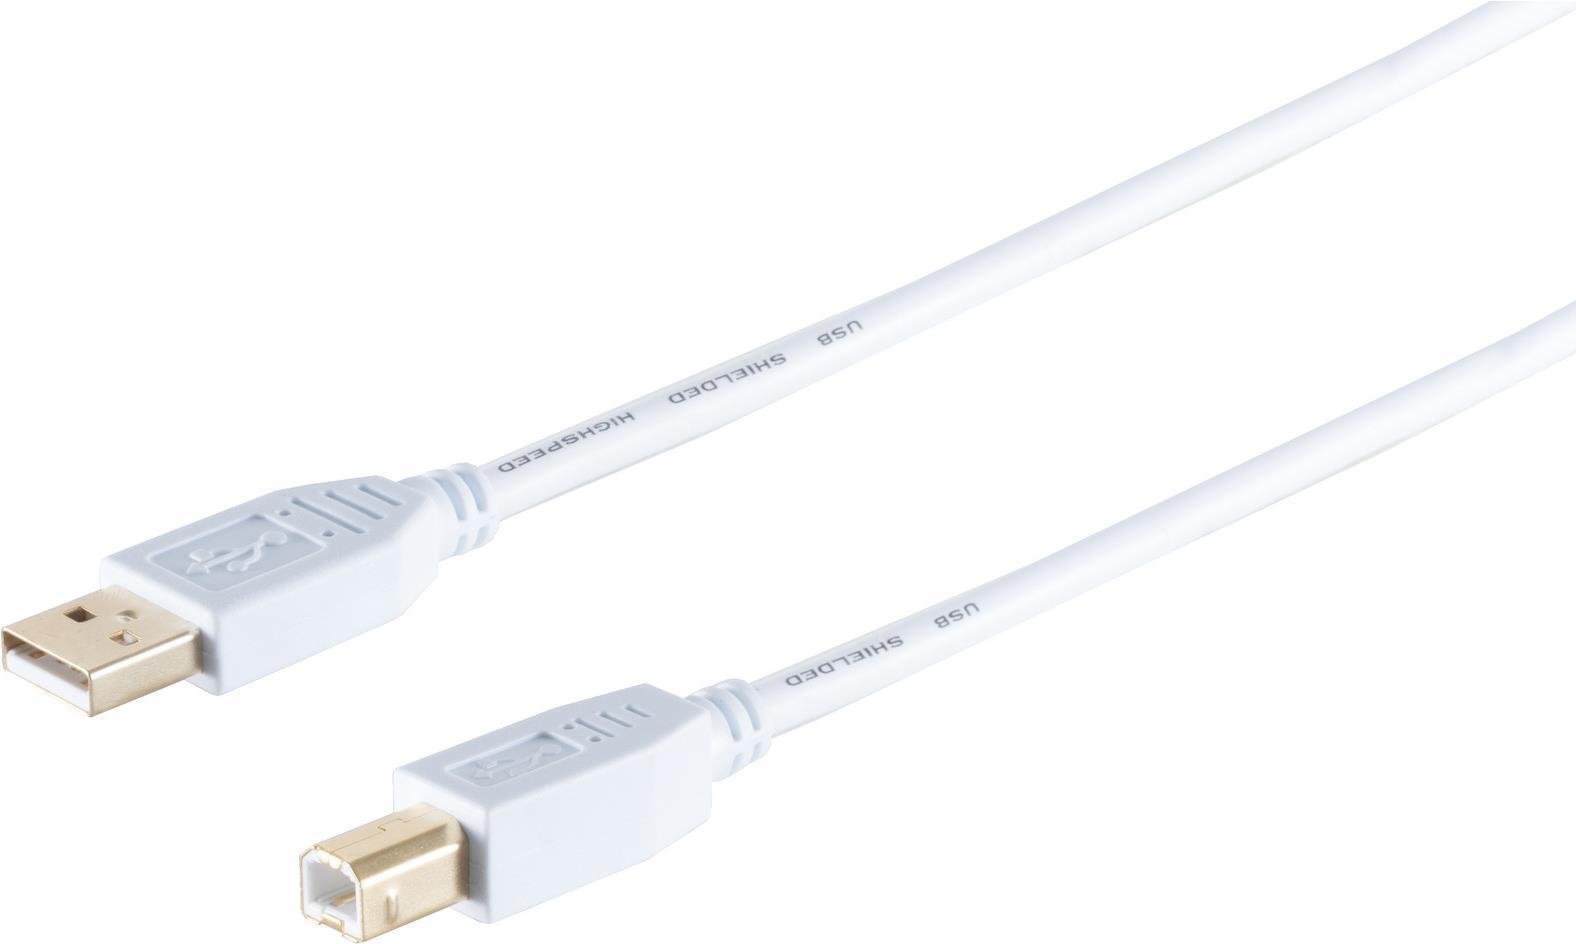 S-CONN S/CONN maximum connectivity USB High Speed 2.0 Kabel, A/B Stecker, vergoldete Kontakte, USB 2